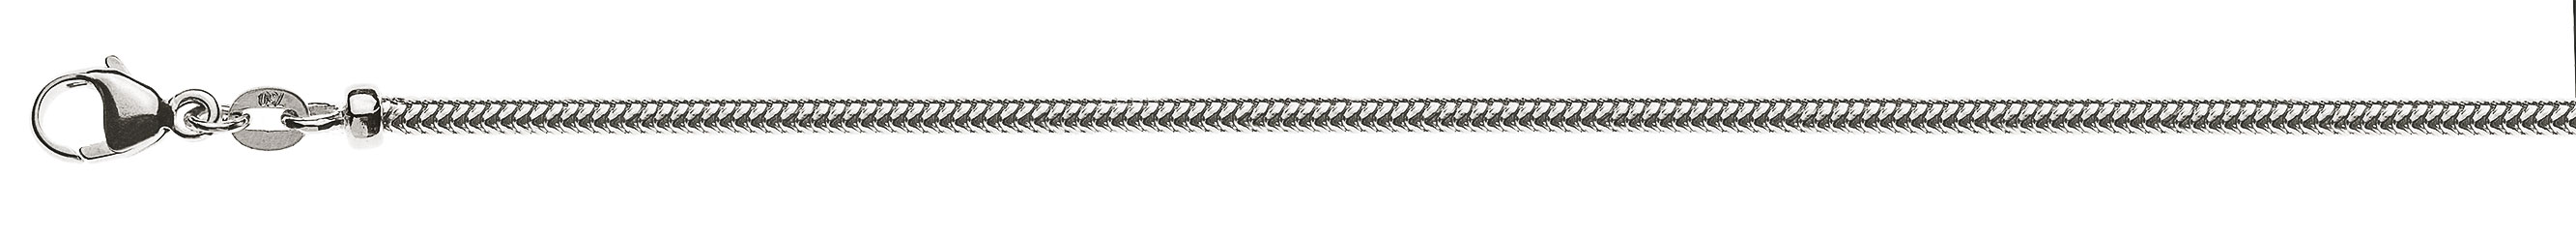 AURONOS Prestige Collier en or blanc 18K, chaîne serpent 40cm 2.4mm